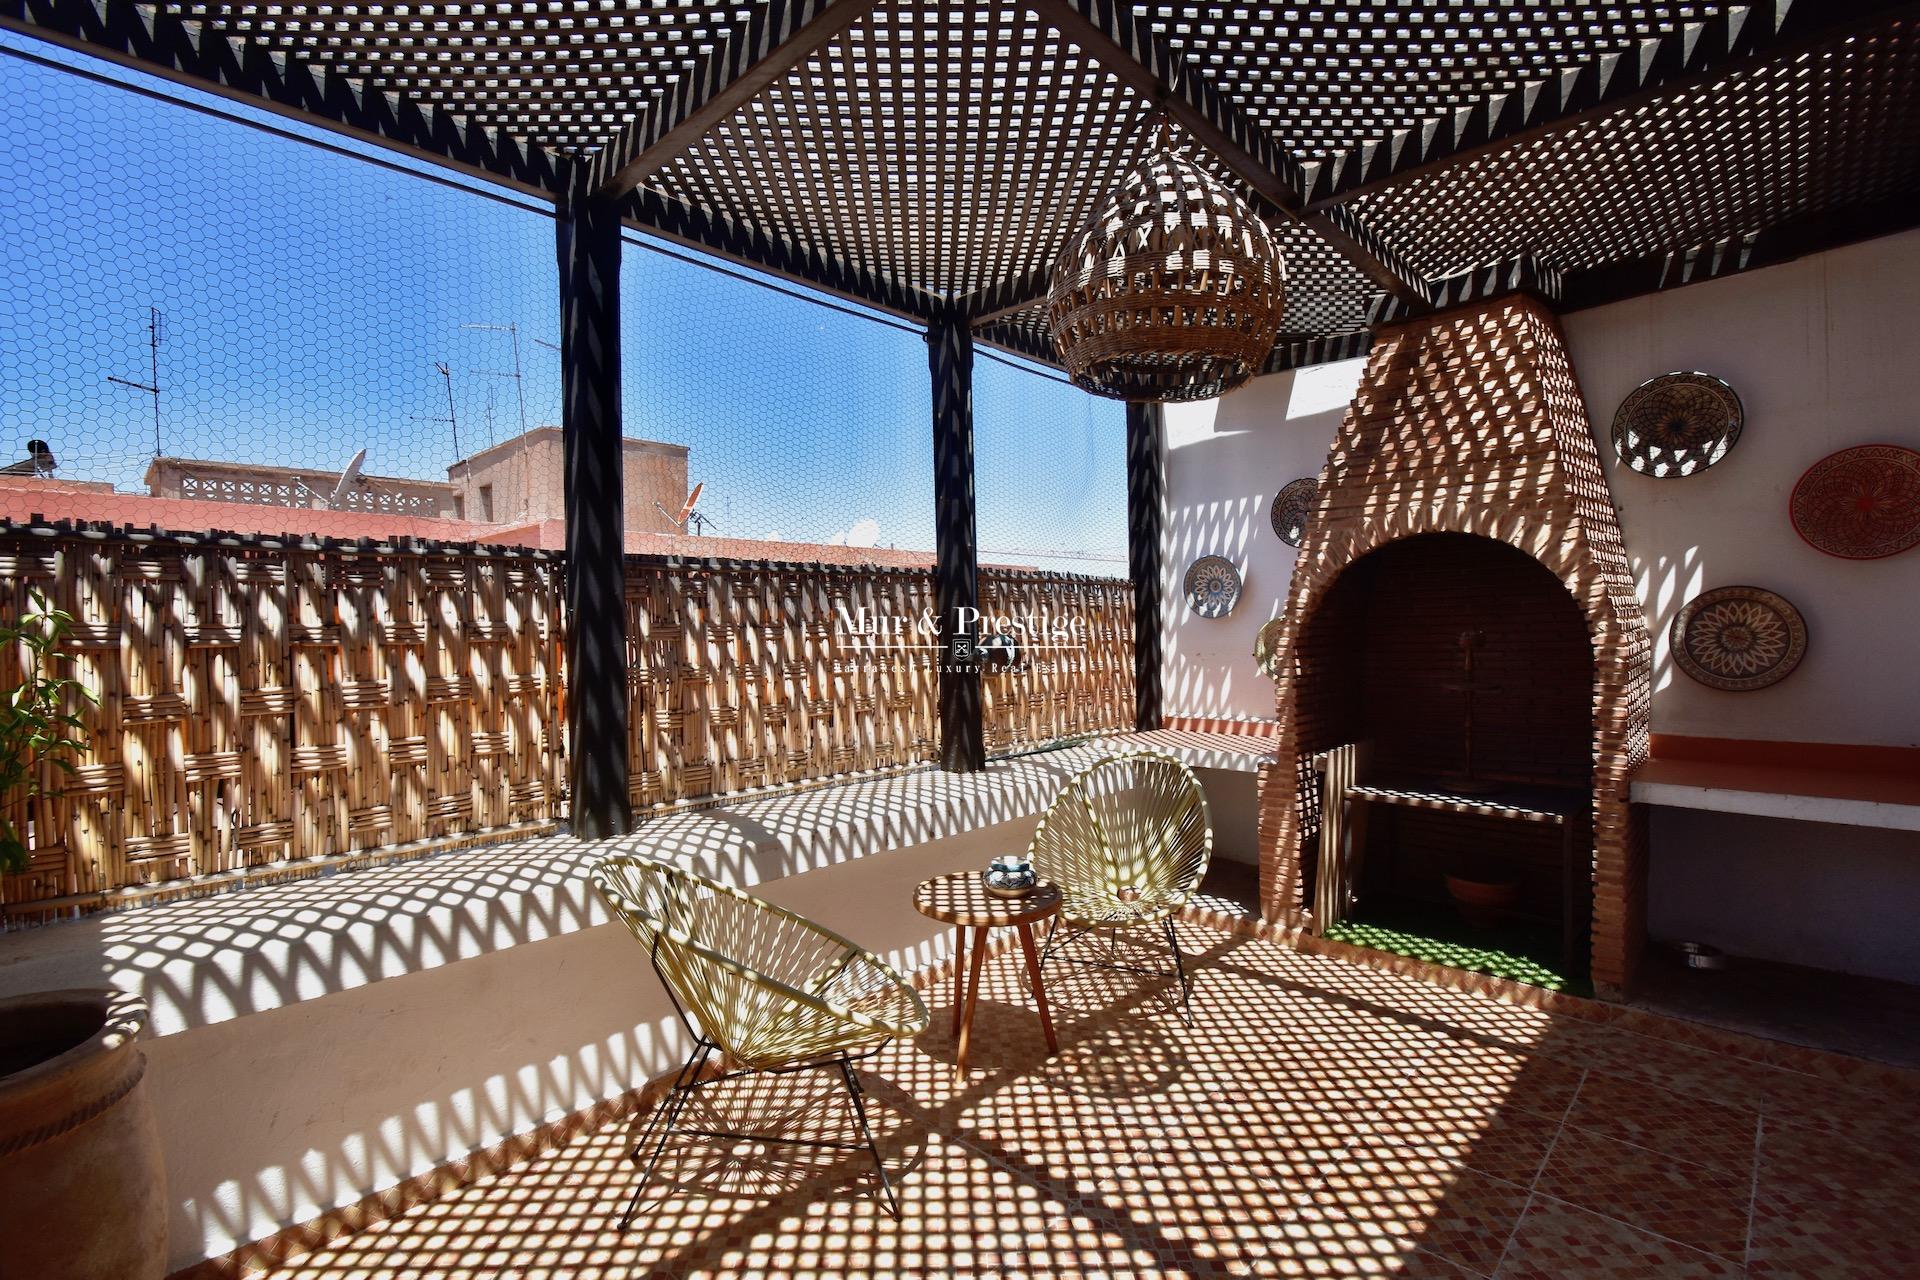 Vente appartement à Marrakech  4 chambres au cœur de Gueliz 